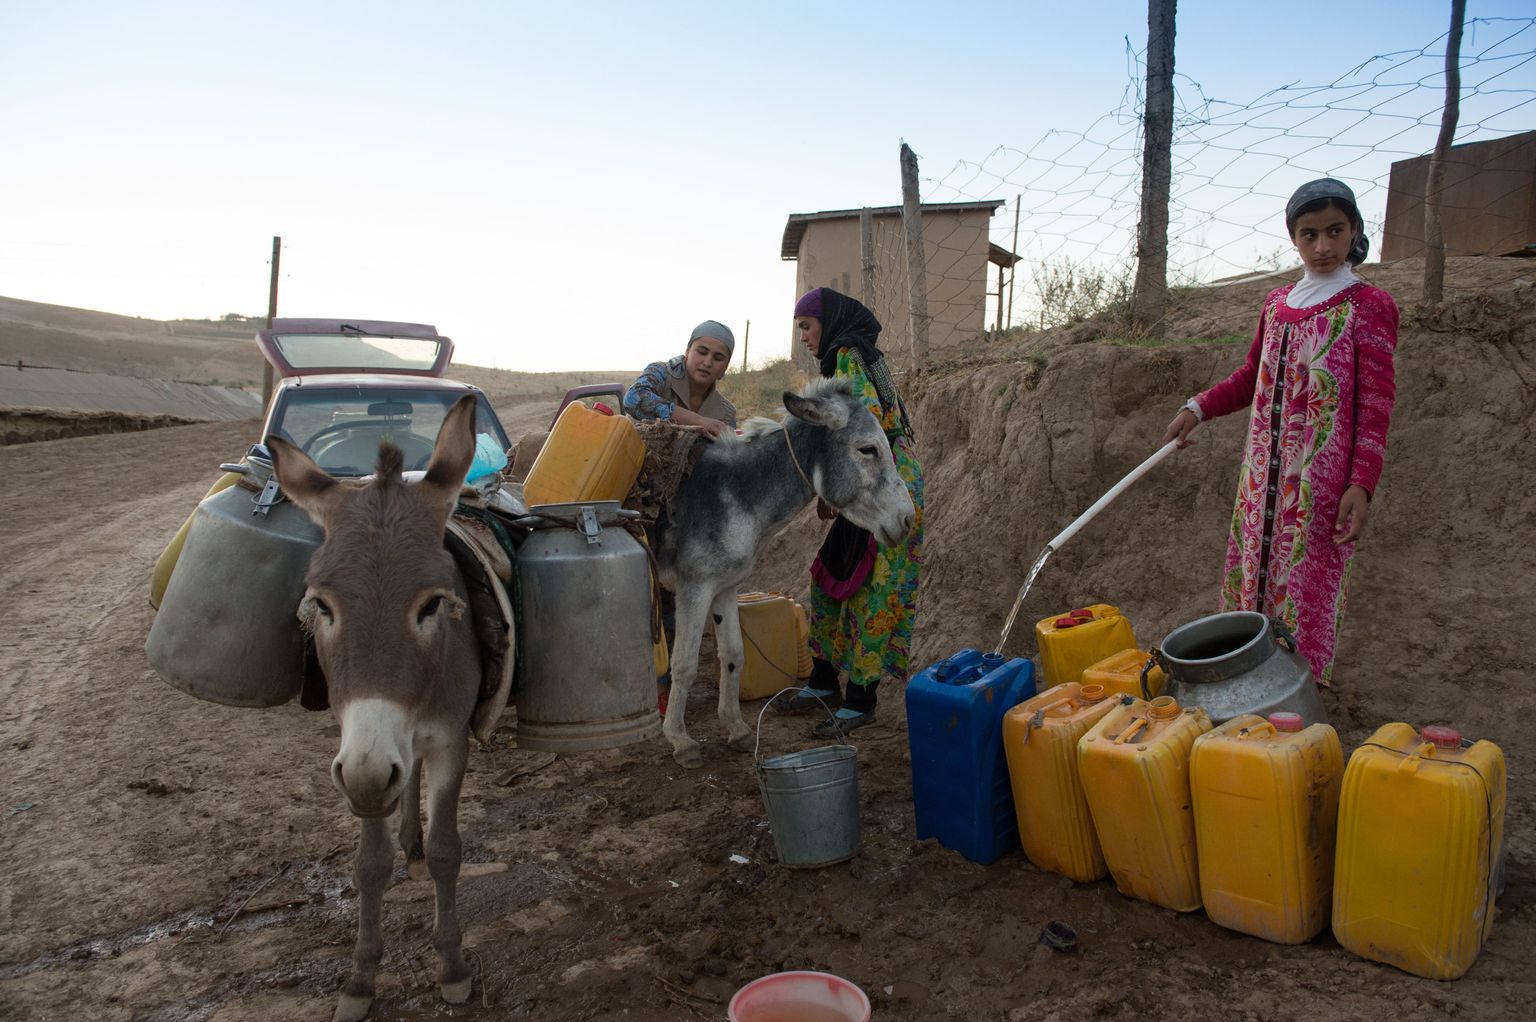 Vee kandmine kaevult koju on Tadžikistani kišlakkides alati naiste ja tüdrukute ülesanne. Äärmisel juhul teevad seda ka poisid. Mõnikord tähendab veetoomine raskete kanistritega mööda mäekülge ülesronimist. Hea, et mehed vähemalt eeslid abiks annavad.  Naised vett võtmas Baljuvoni lähedal Jakasada kišlakis. Naiste taga paistab auto, millega üks mees tuli appi naisele vett vedama. Vaat see oli haruldus.